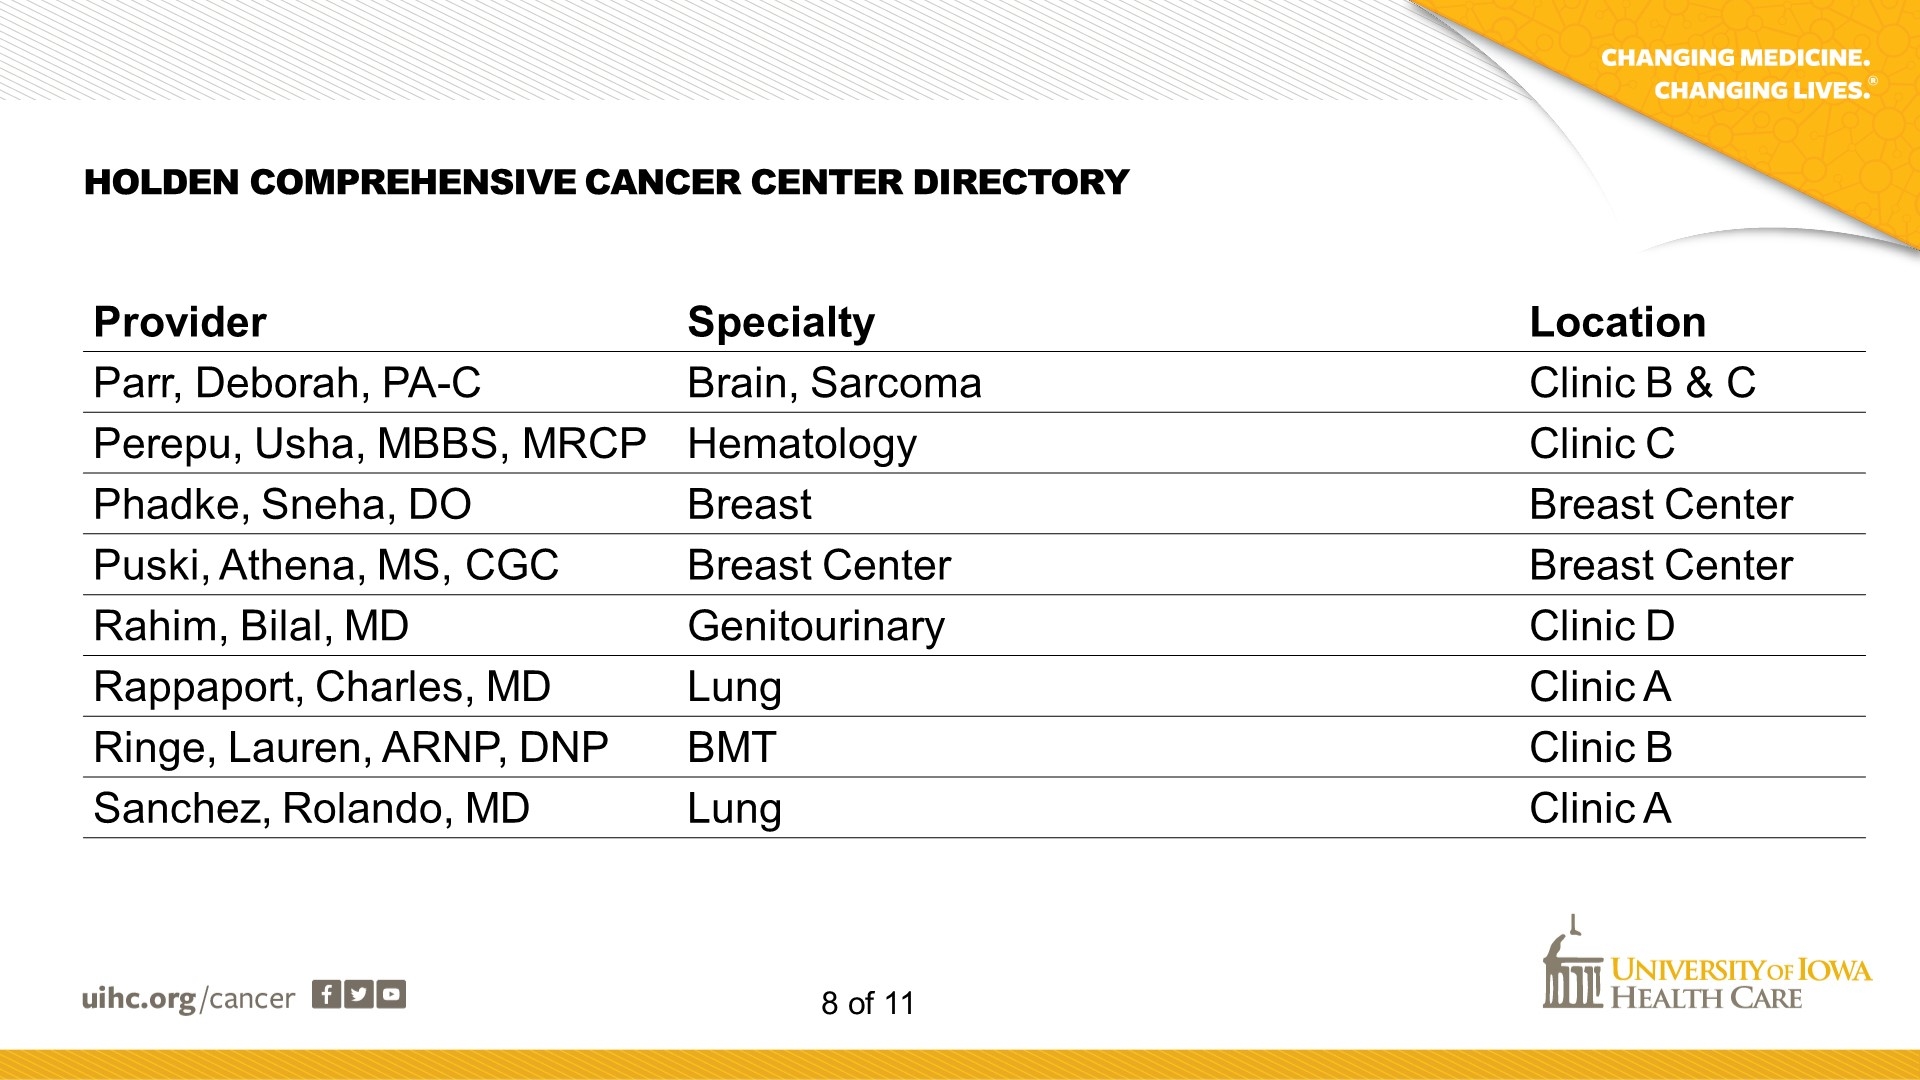 Cancer Center Directory - Slide 8